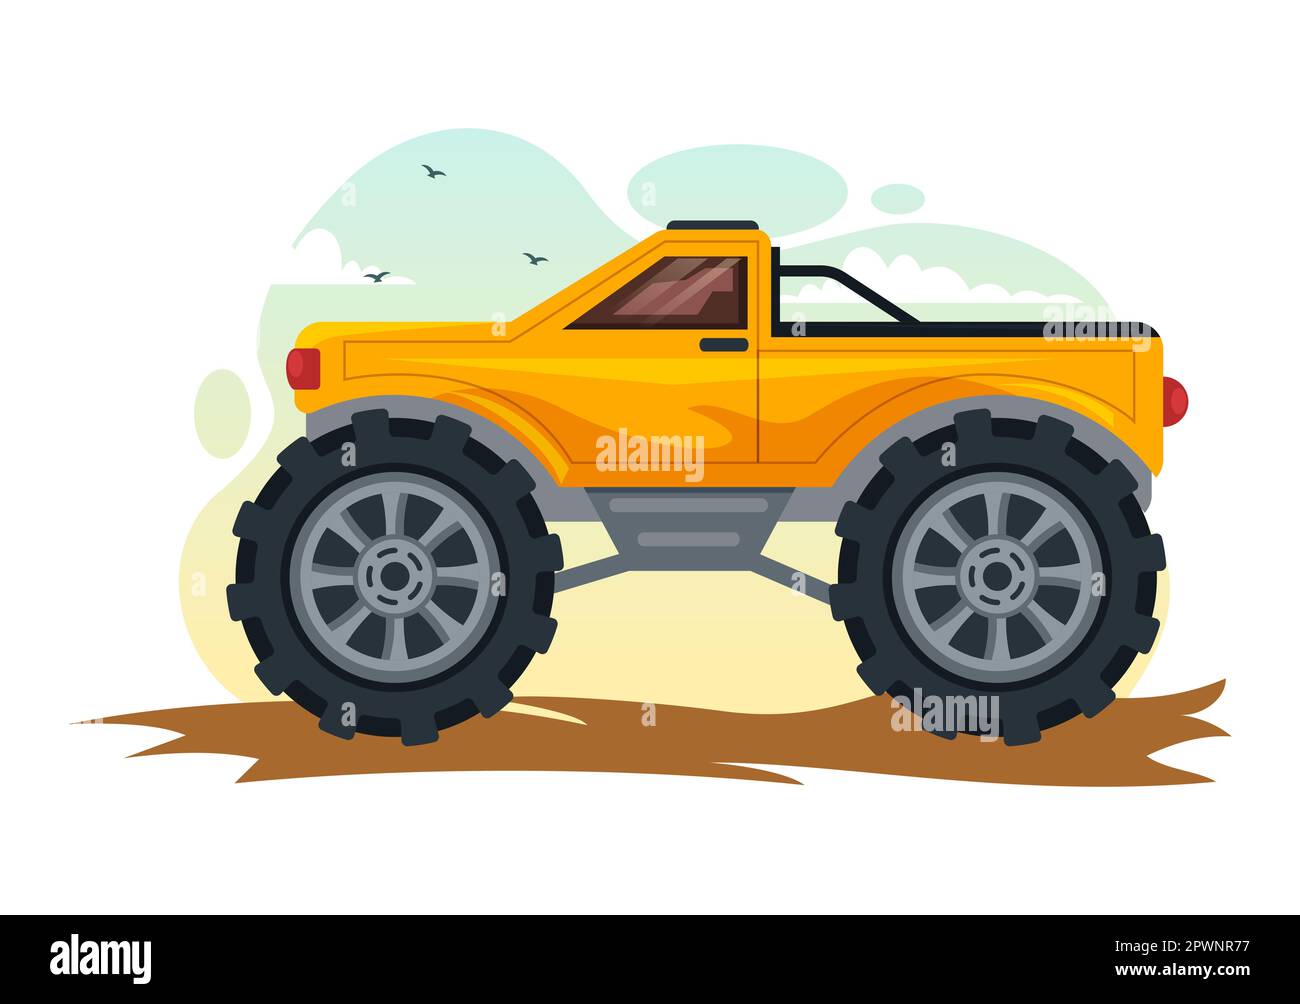 Illustration tout-terrain avec une voiture Jeep ou un vus pour traverser le terrain rocheux, les rivières et le sable dans des modèles tirés à la main de dessin de dessin de dessin animé Banque D'Images